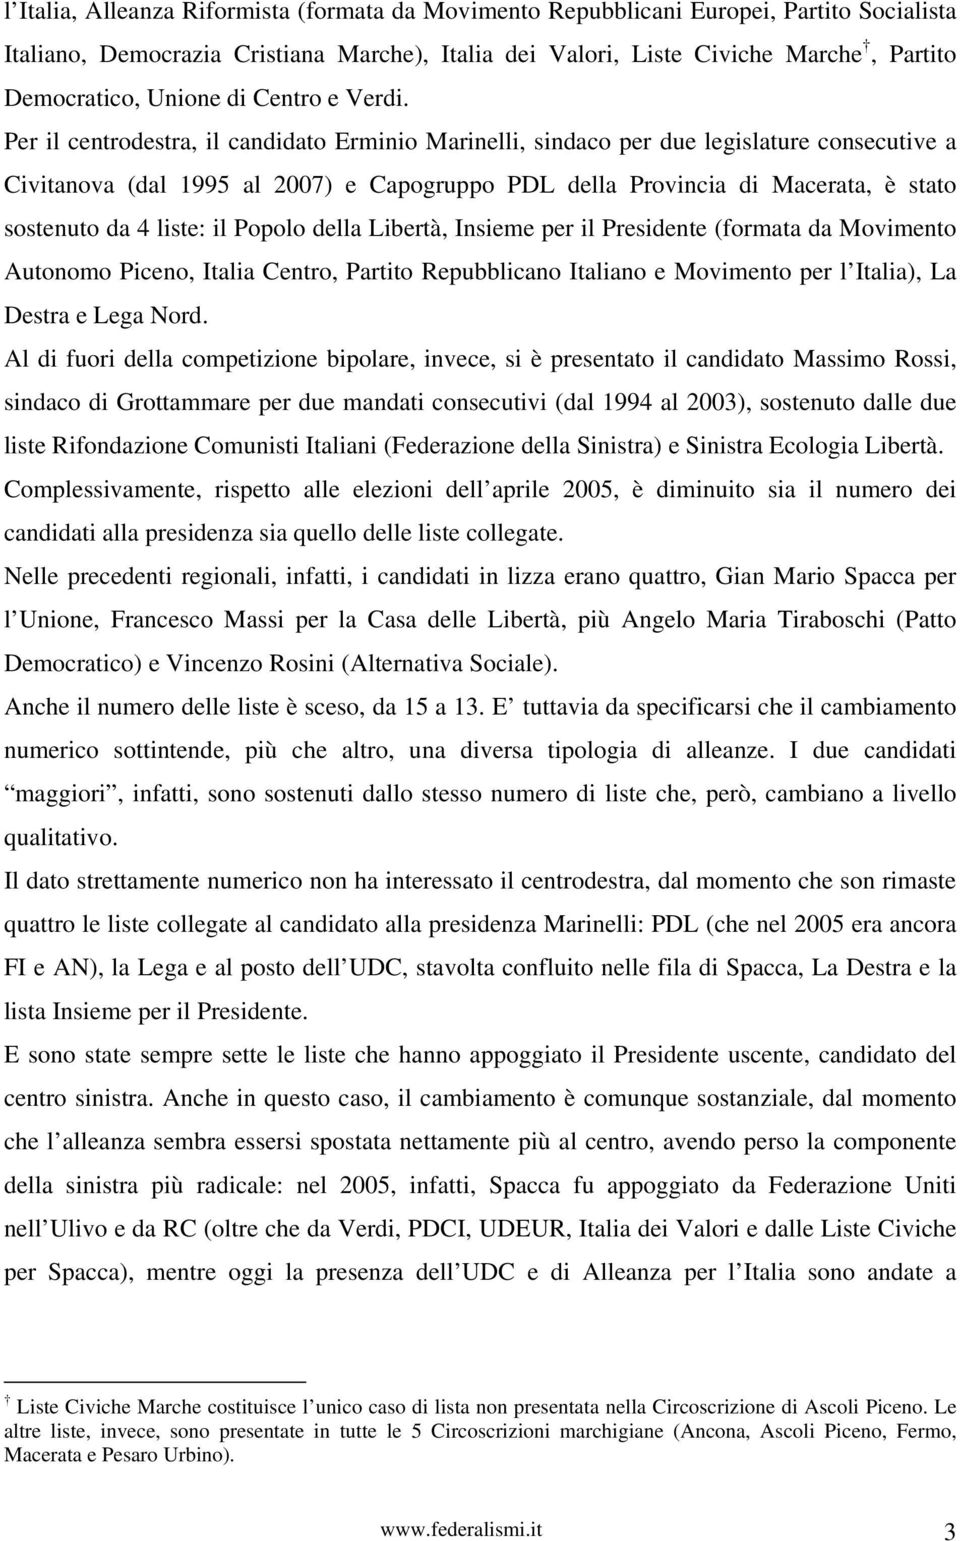 Per il centrodestra, il candidato Erminio Marinelli, sindaco per due legislature consecutive a Civitanova (dal 1995 al 2007) e Capogruppo PDL della Provincia di Macerata, è stato sostenuto da 4